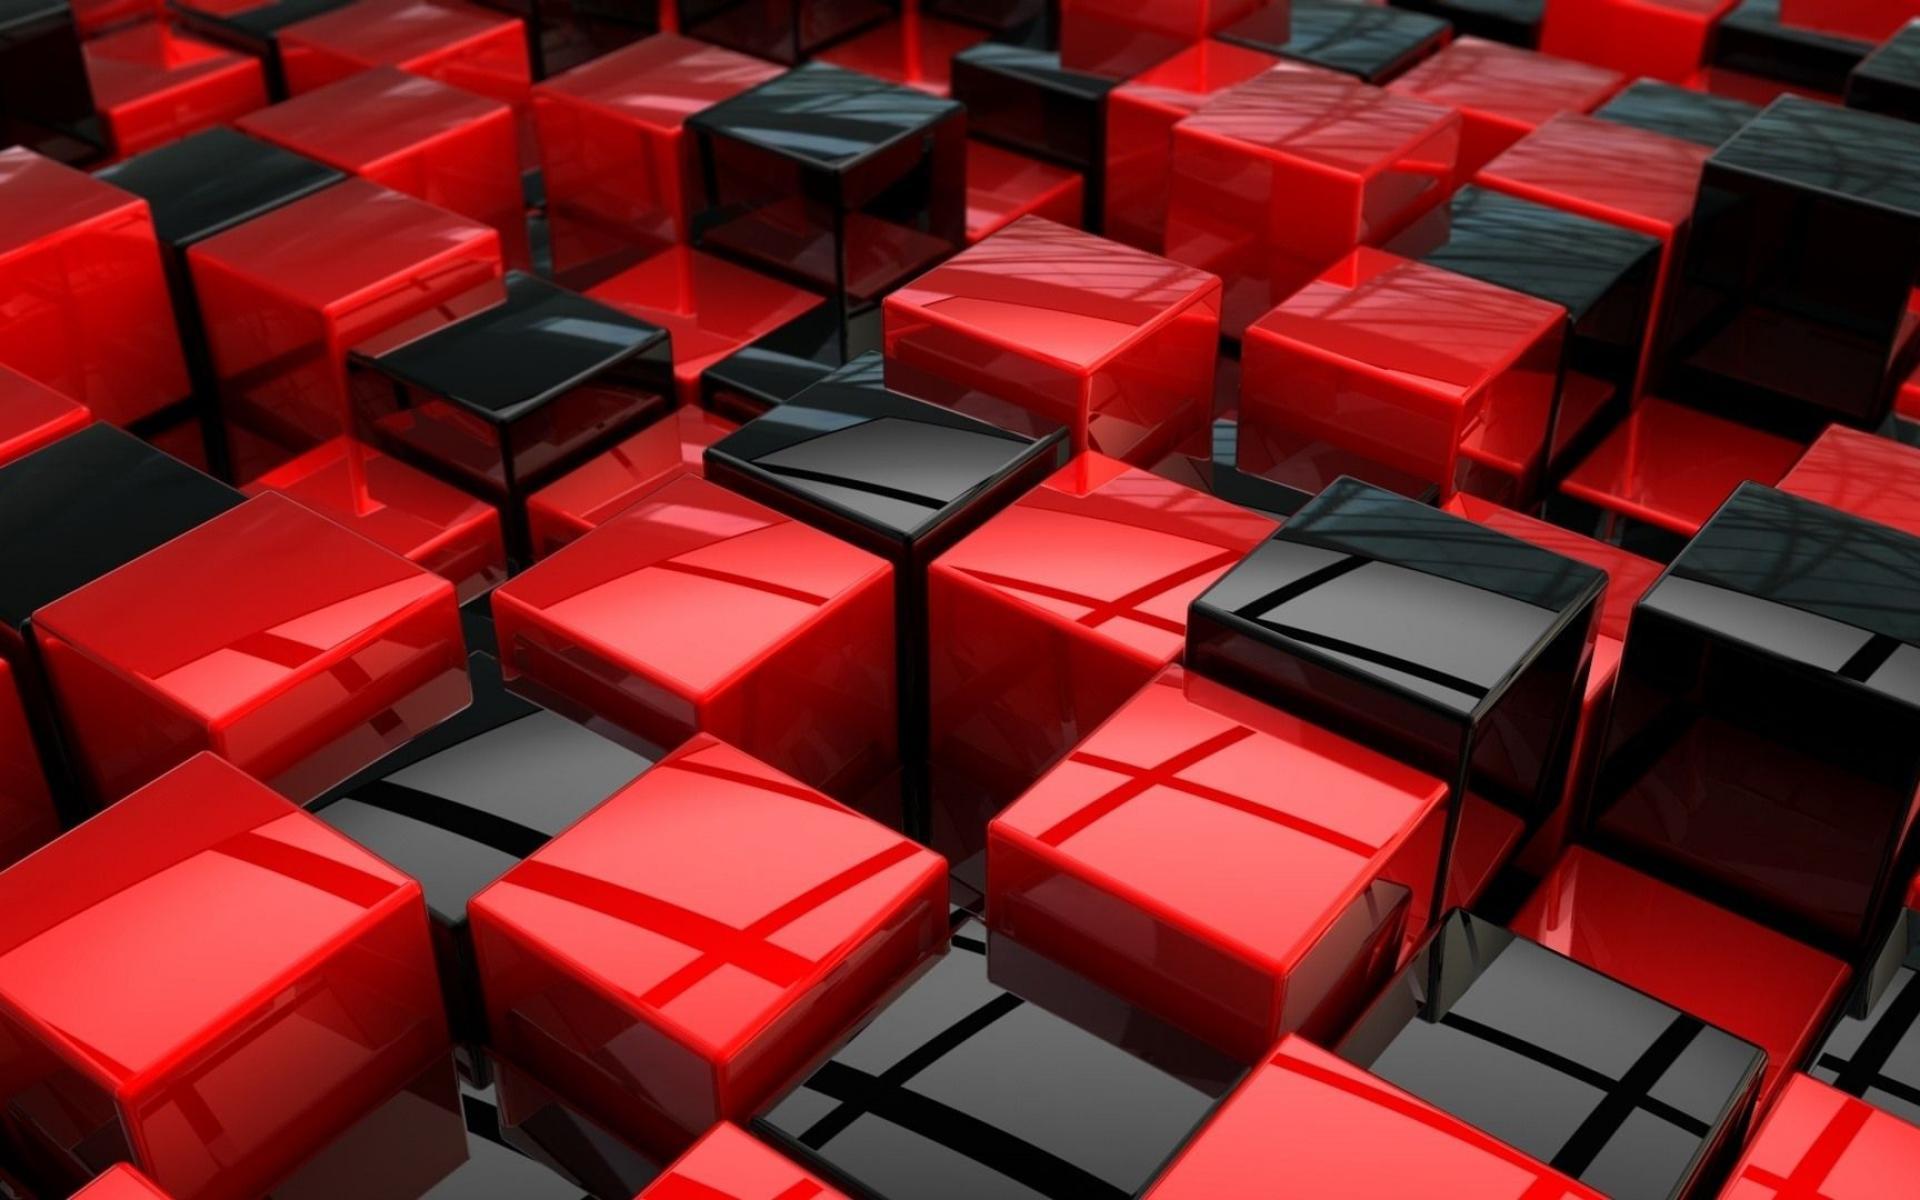 1920x1200 Hình nền sắc nét màu đỏ cho các thiết bị máy tính để bàn, máy tính xách tay và máy tính bảng